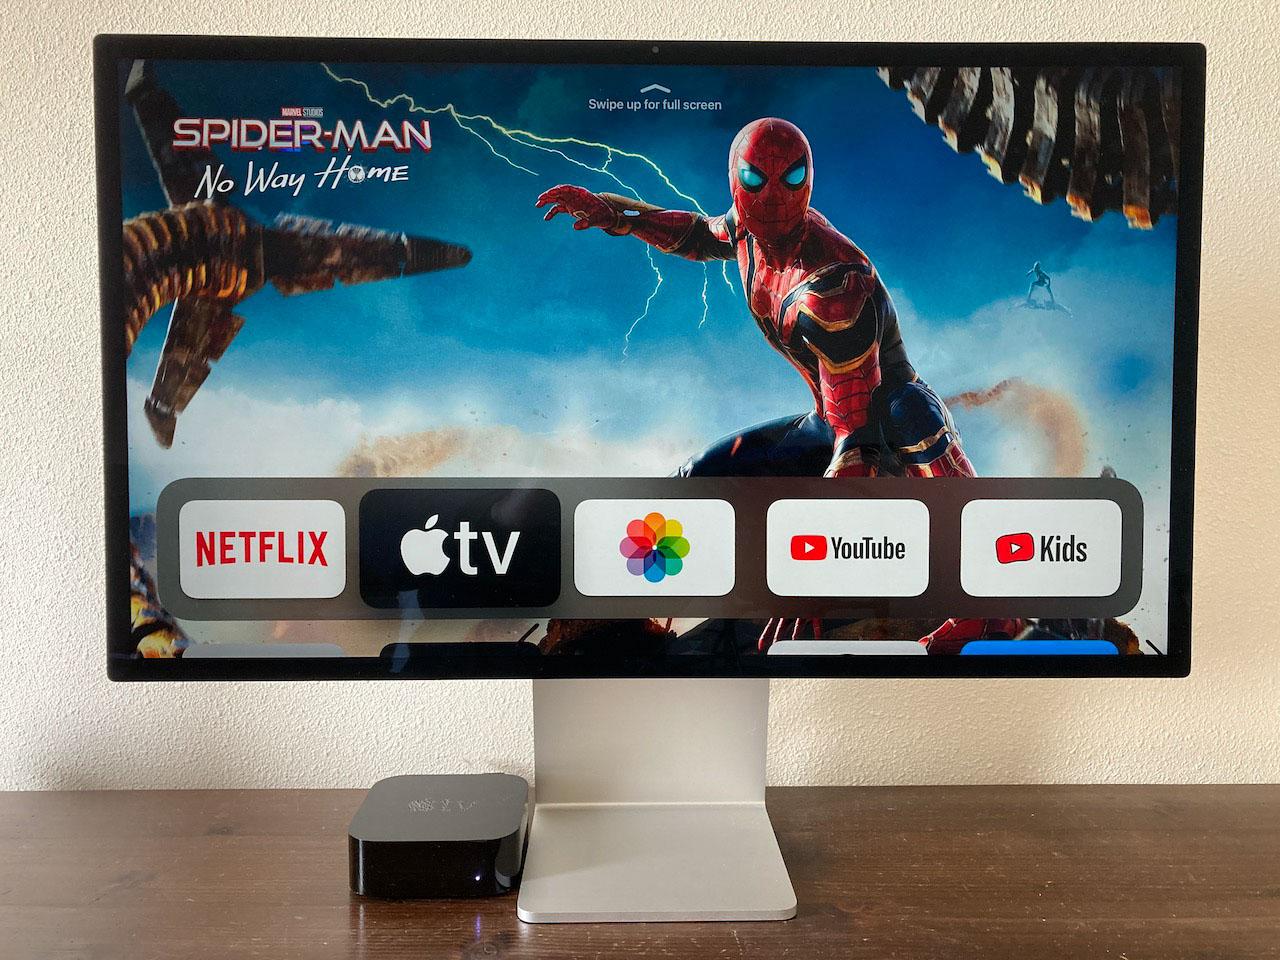 Studio Display enabling Apple TV | MacRumors Forums